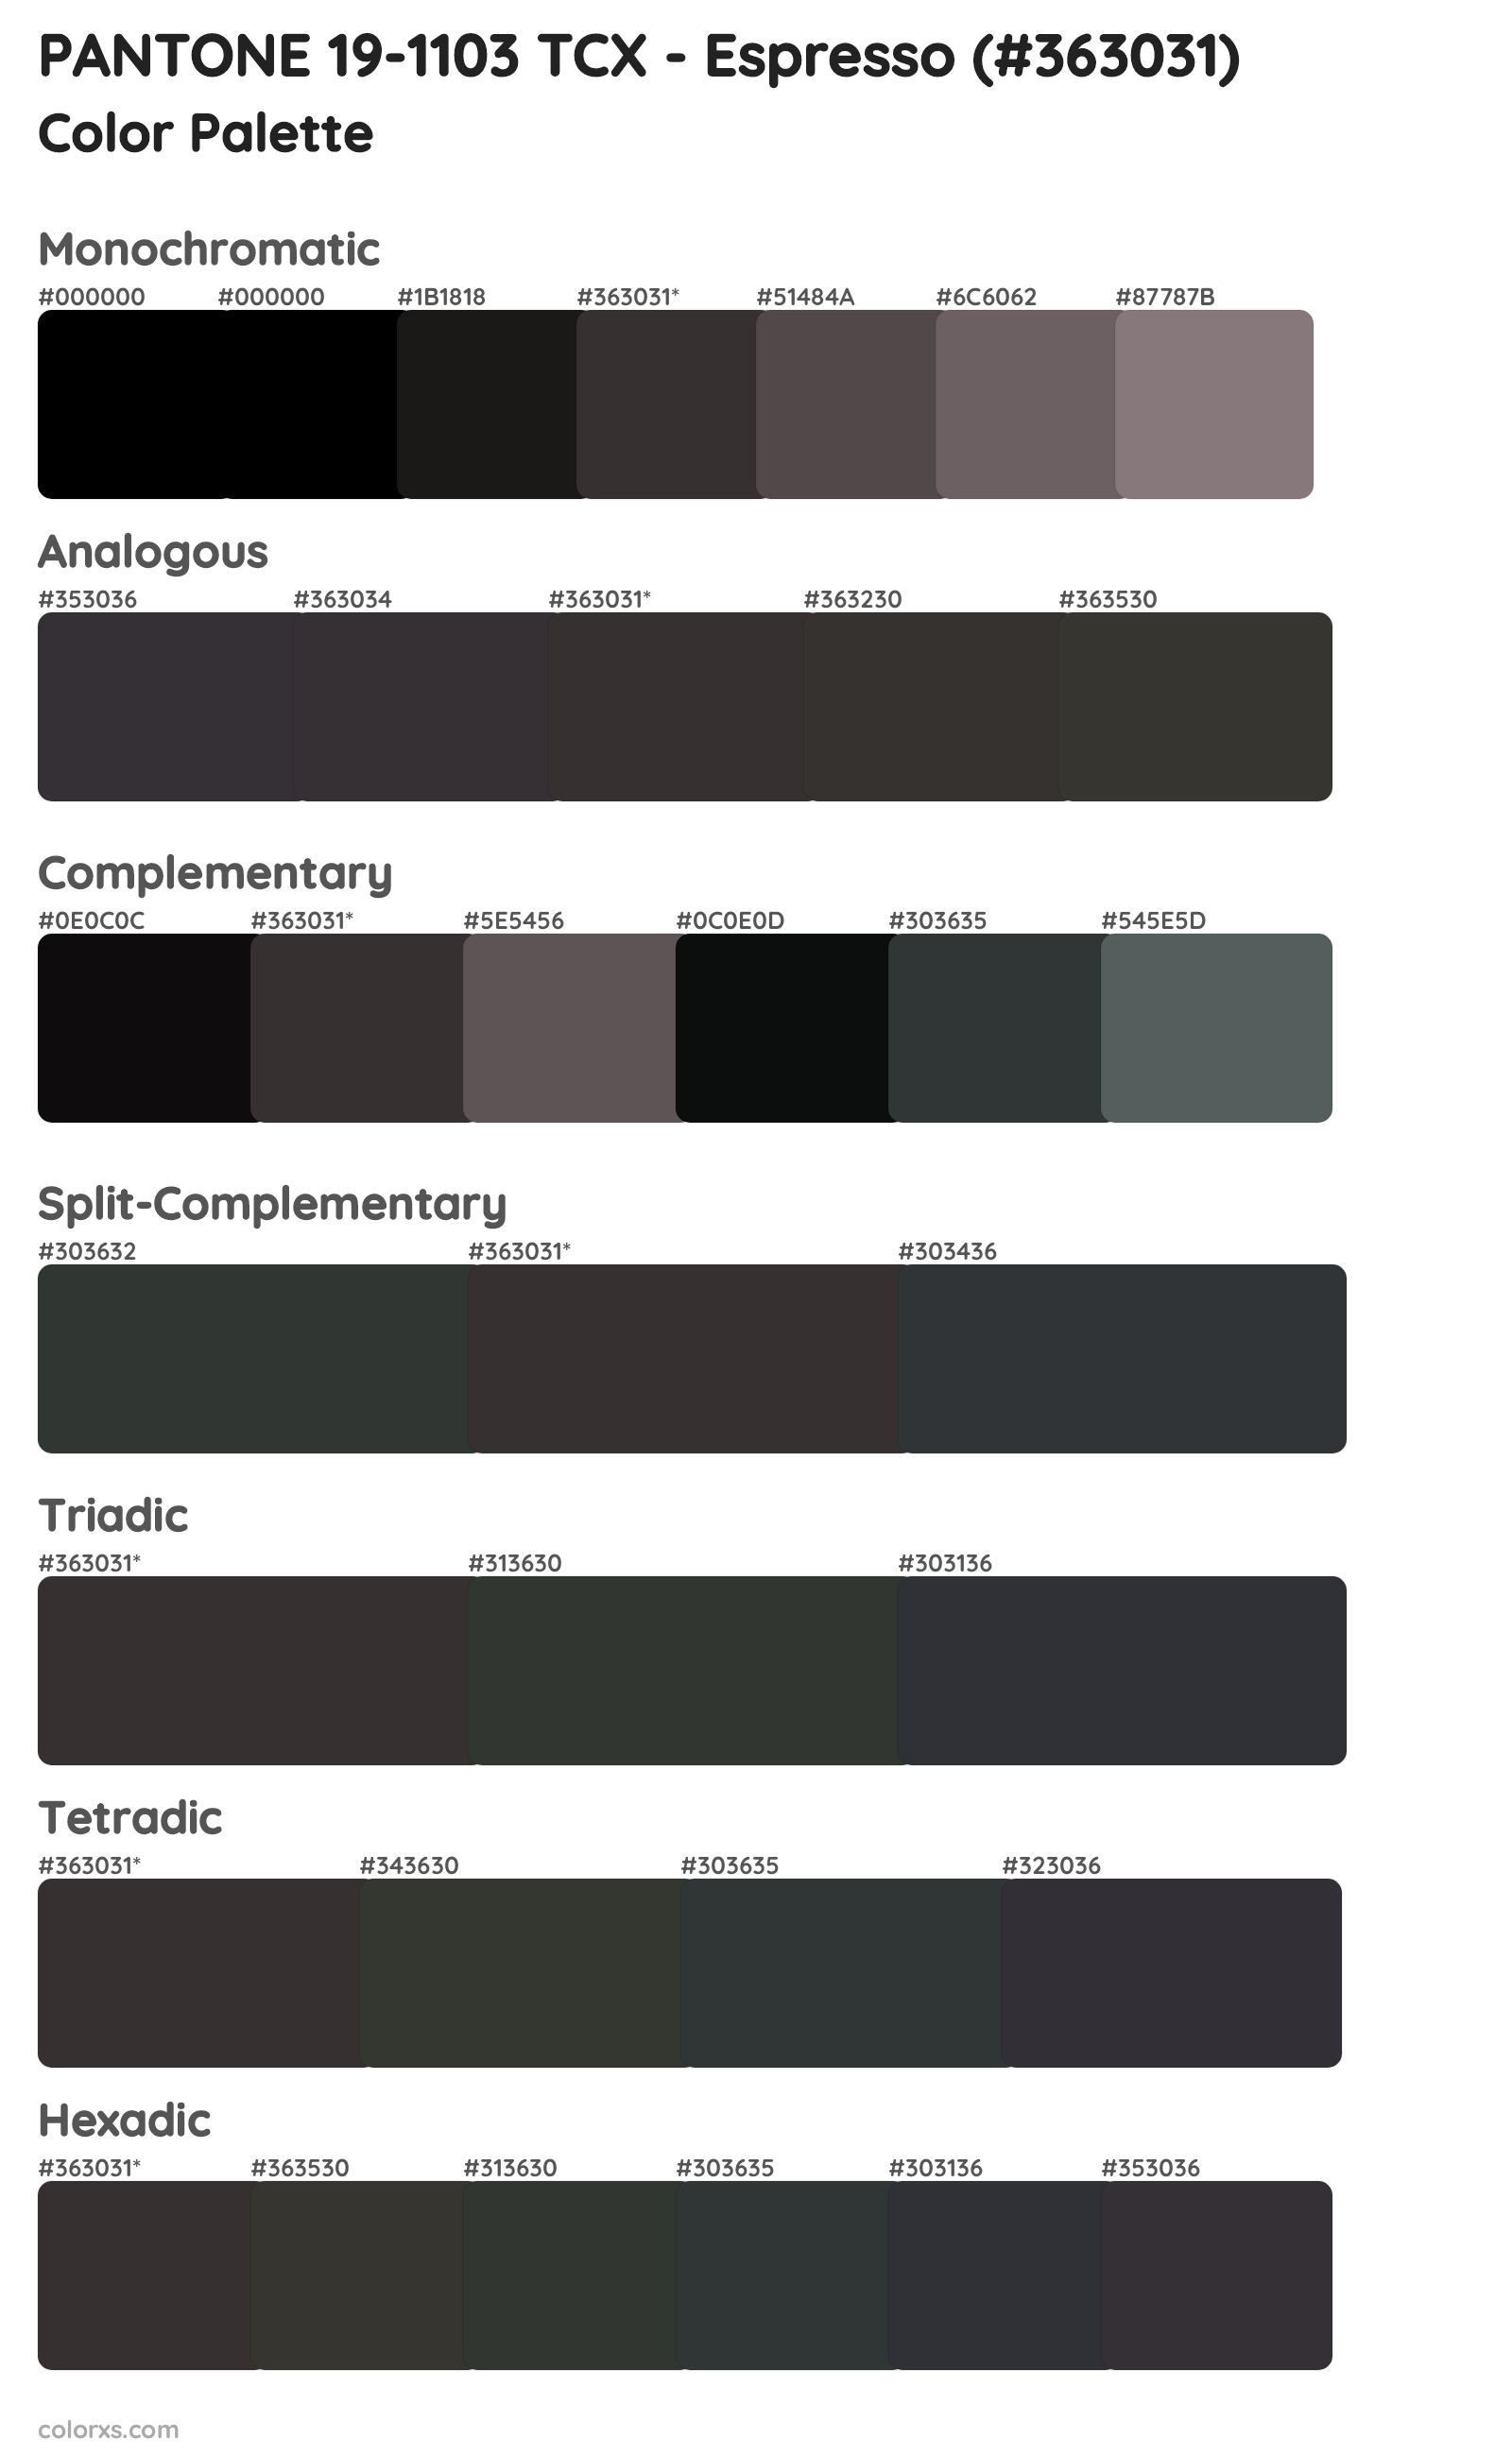 PANTONE 19-1103 TCX - Espresso Color Scheme Palettes